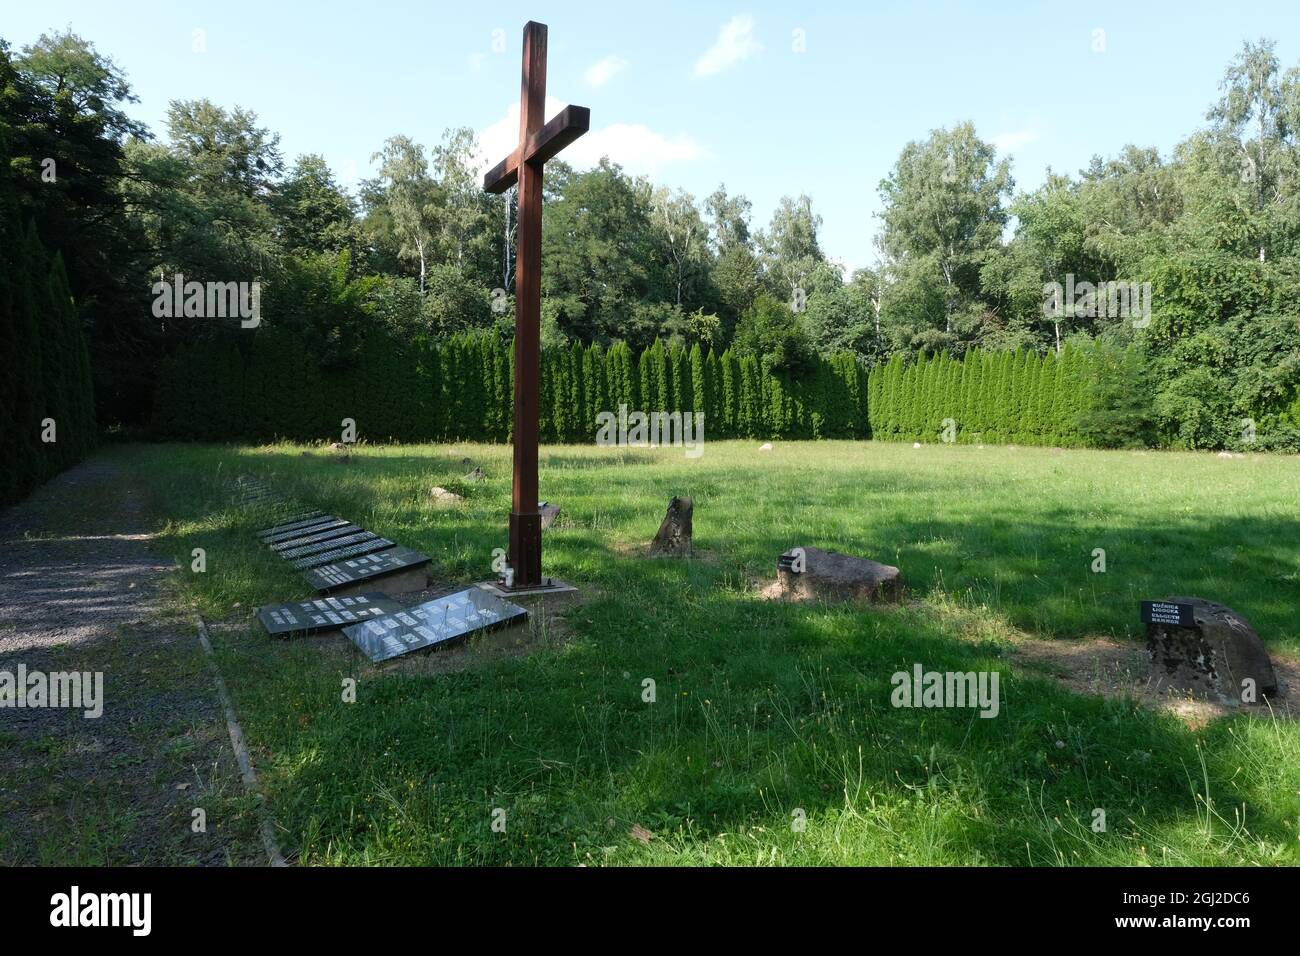 Lambinowice, Pologne - 21 août 2021 : camp de travail et cimetière pour les prisonniers allemands immédiatement après la fin de la guerre. Jour d'été ensoleillé. Banque D'Images